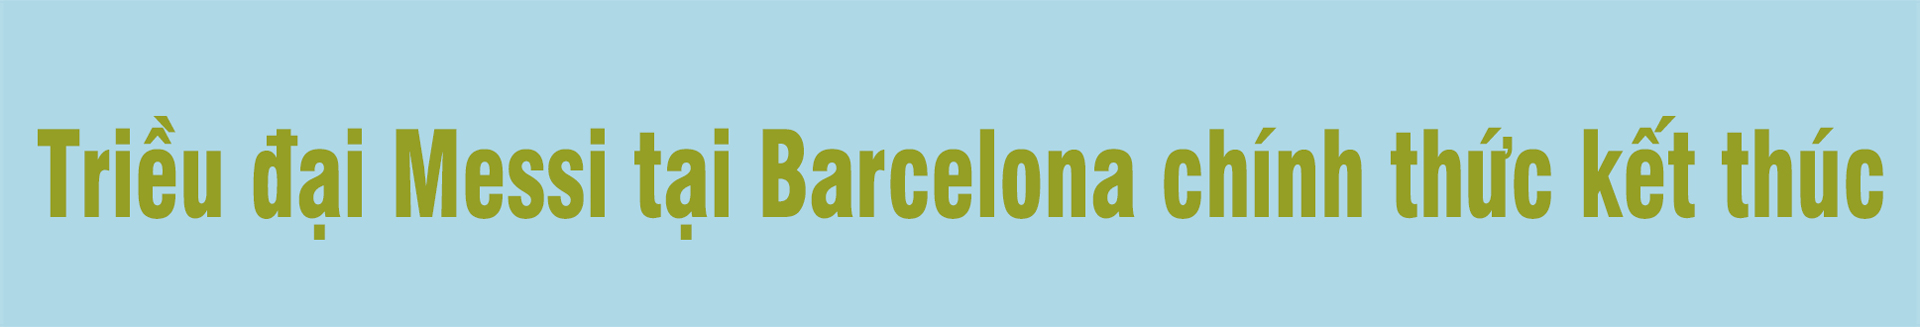 Messi rời Barcelona: Sự sụp đổ của một triều đại và miền đất mới ngập tiền - 3